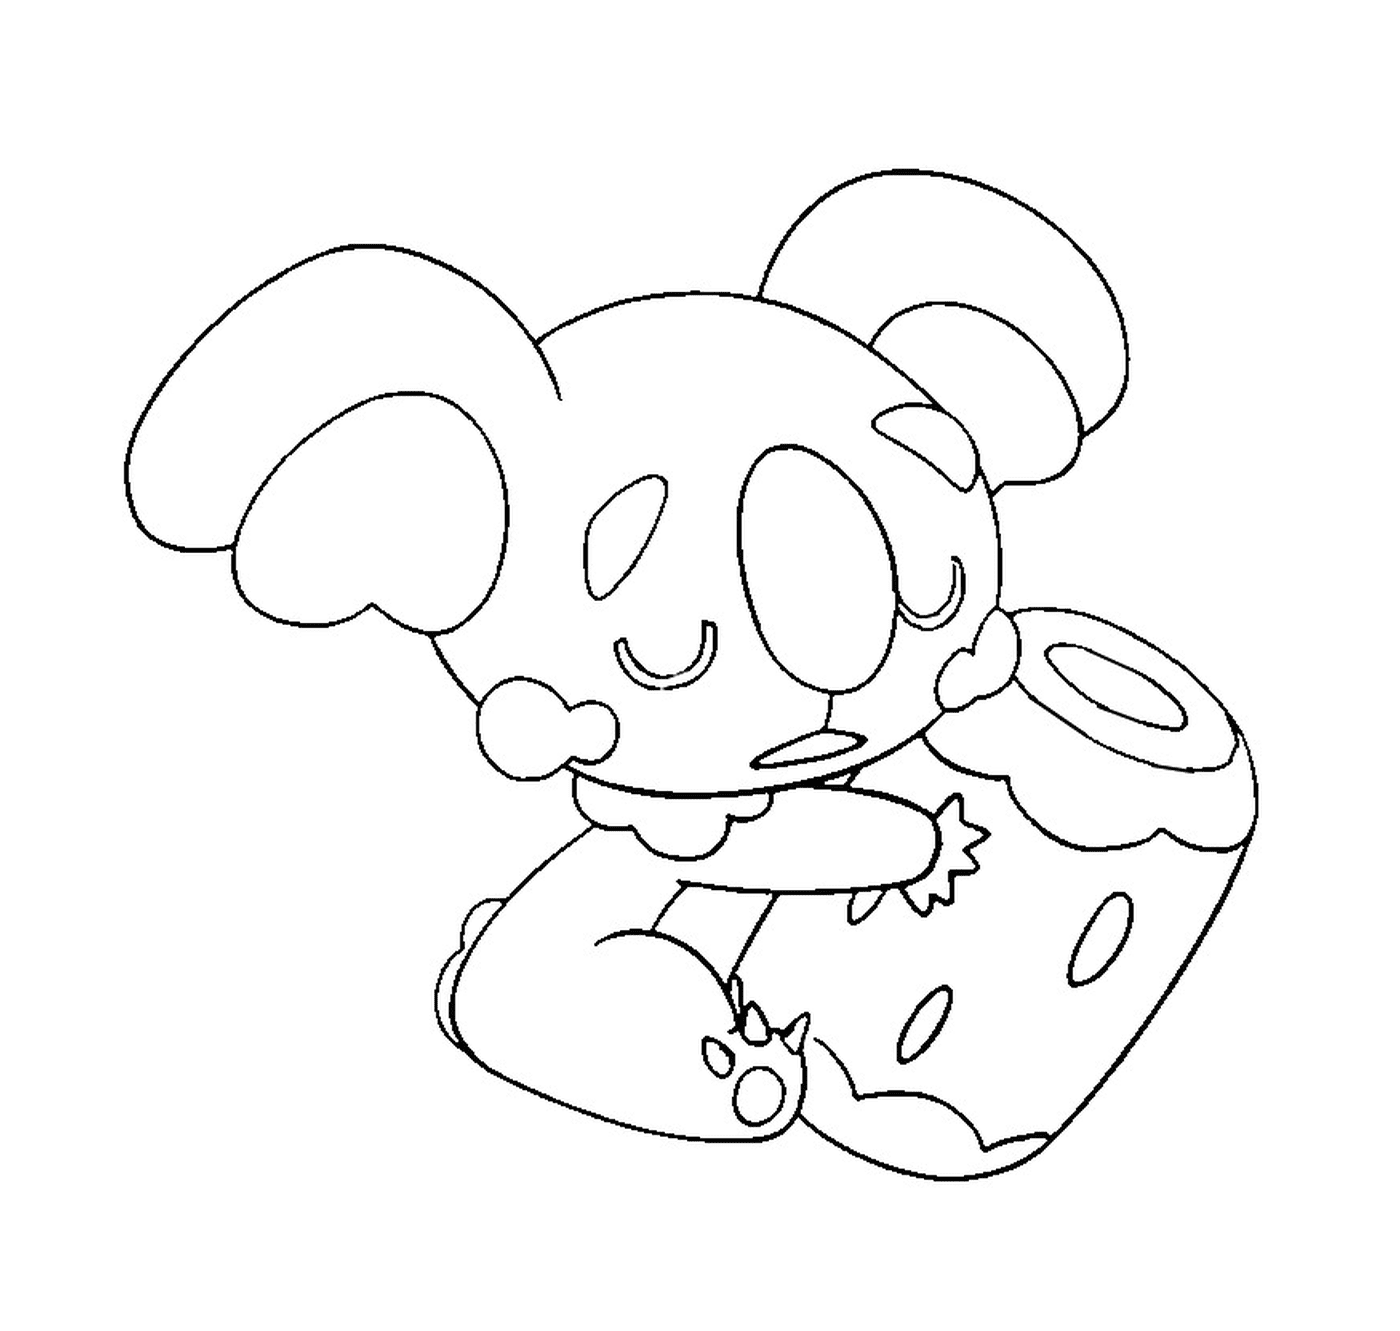  Dodoala, un animale che mangia qualcosa 